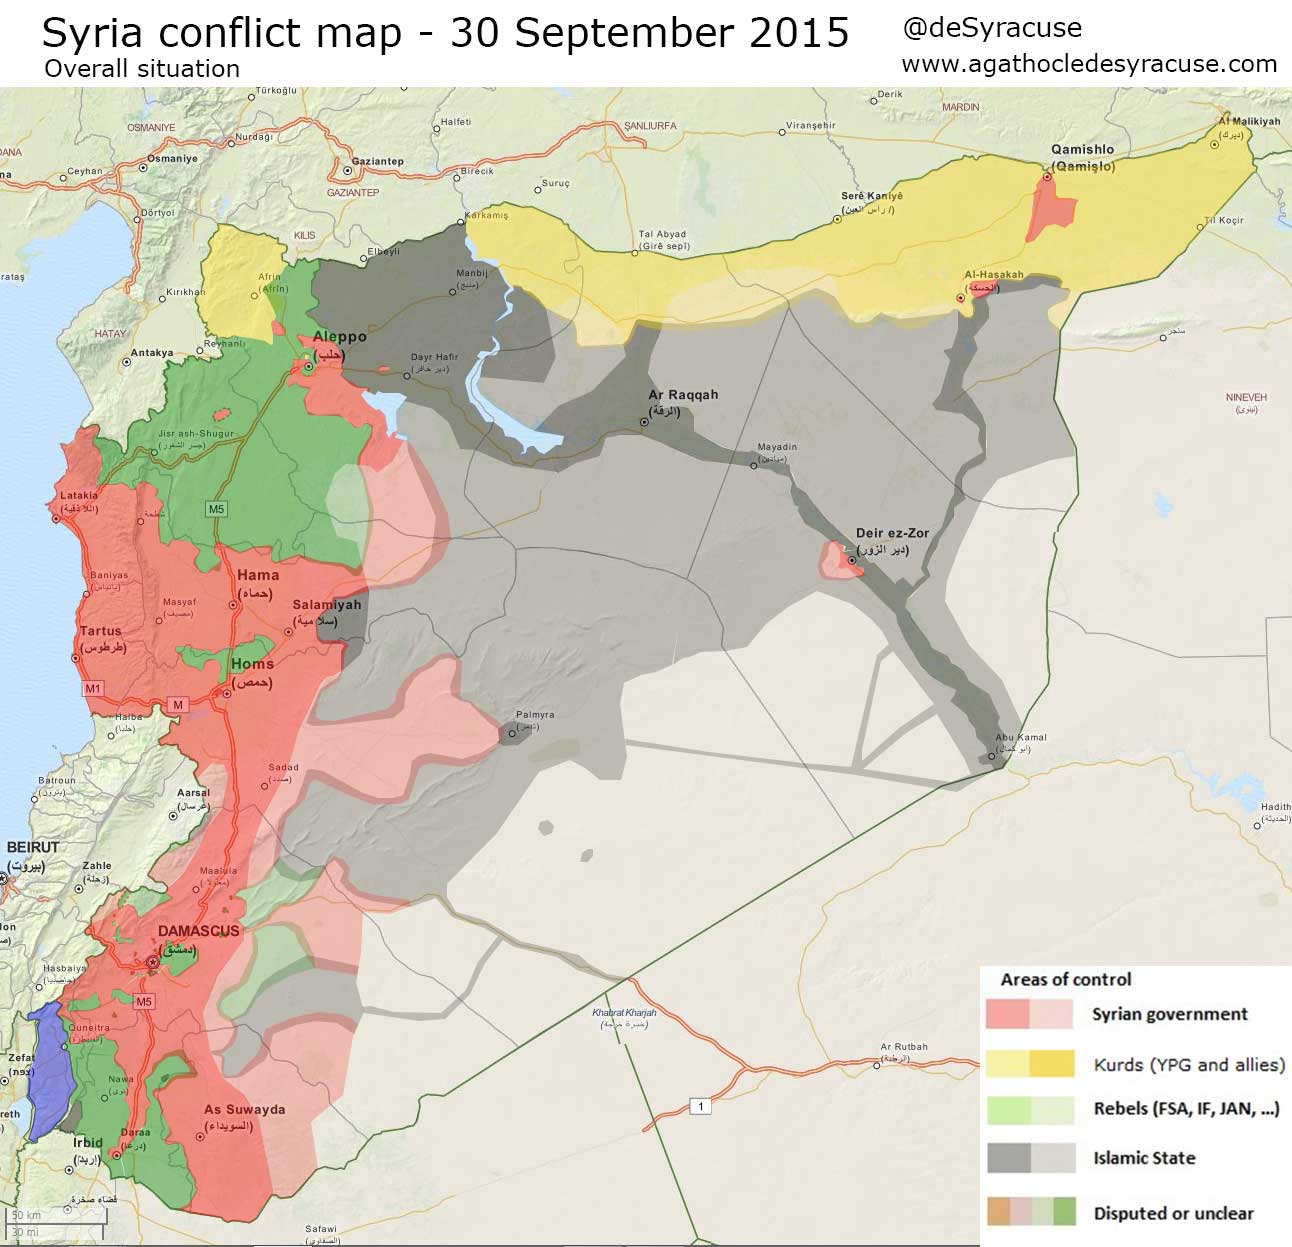 Карта расстановки сил в Сирии: ИГИЛ, оппозиция, Асадисты, курды по состоянию на 30 сентября 2015 года